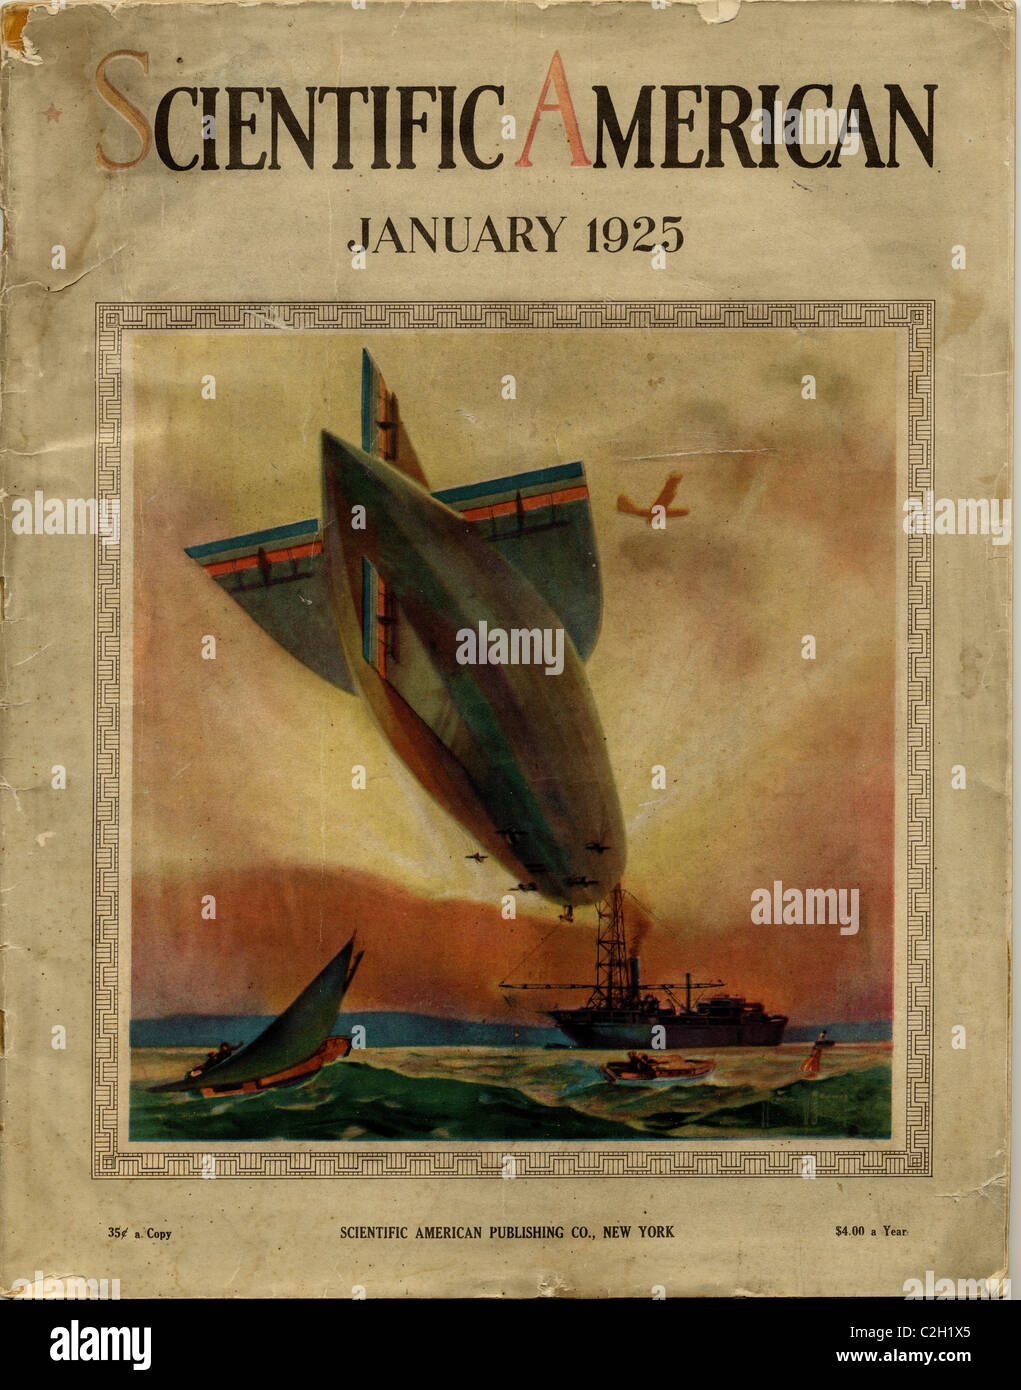 Wissenschaftliche amerikanische decken von 1925 zeigt ein Luftschiff, das Andocken an ein Schiff auf hoher See. Stockfoto